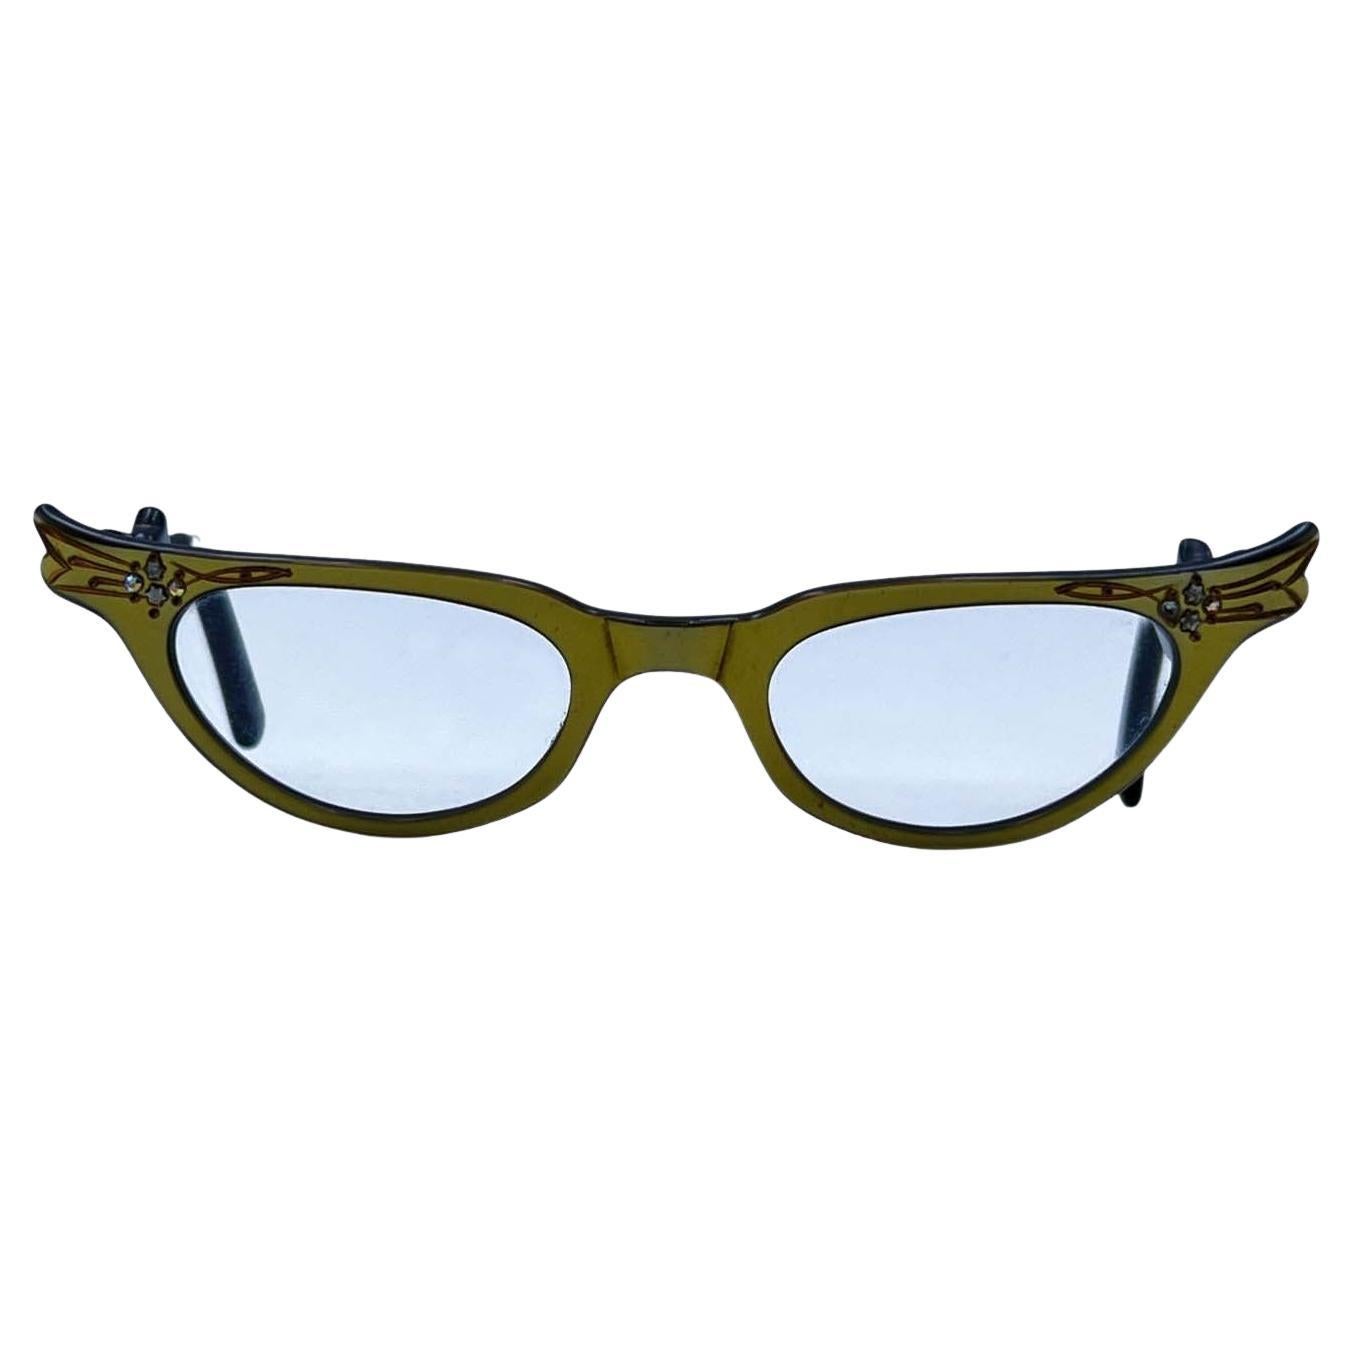 Vintage 1950s Gold Tone Cat-Eye Eyeglasses 44-22 Crystals Frame